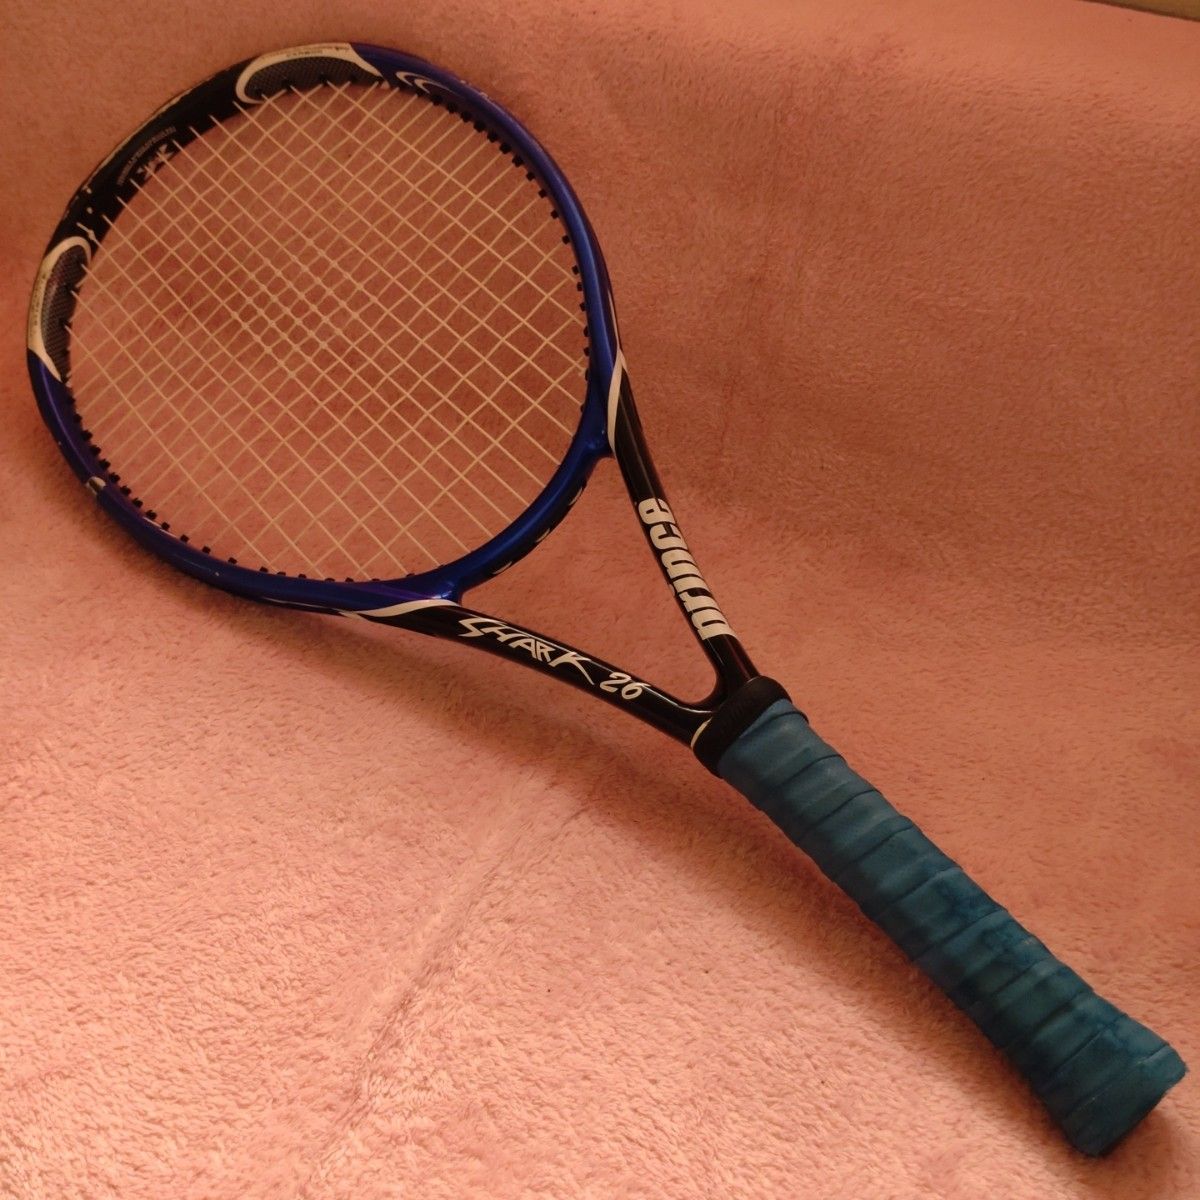 【送料込】プリンスジュニア用テニスラケット「SHARK 26」 硬式テニスラケット